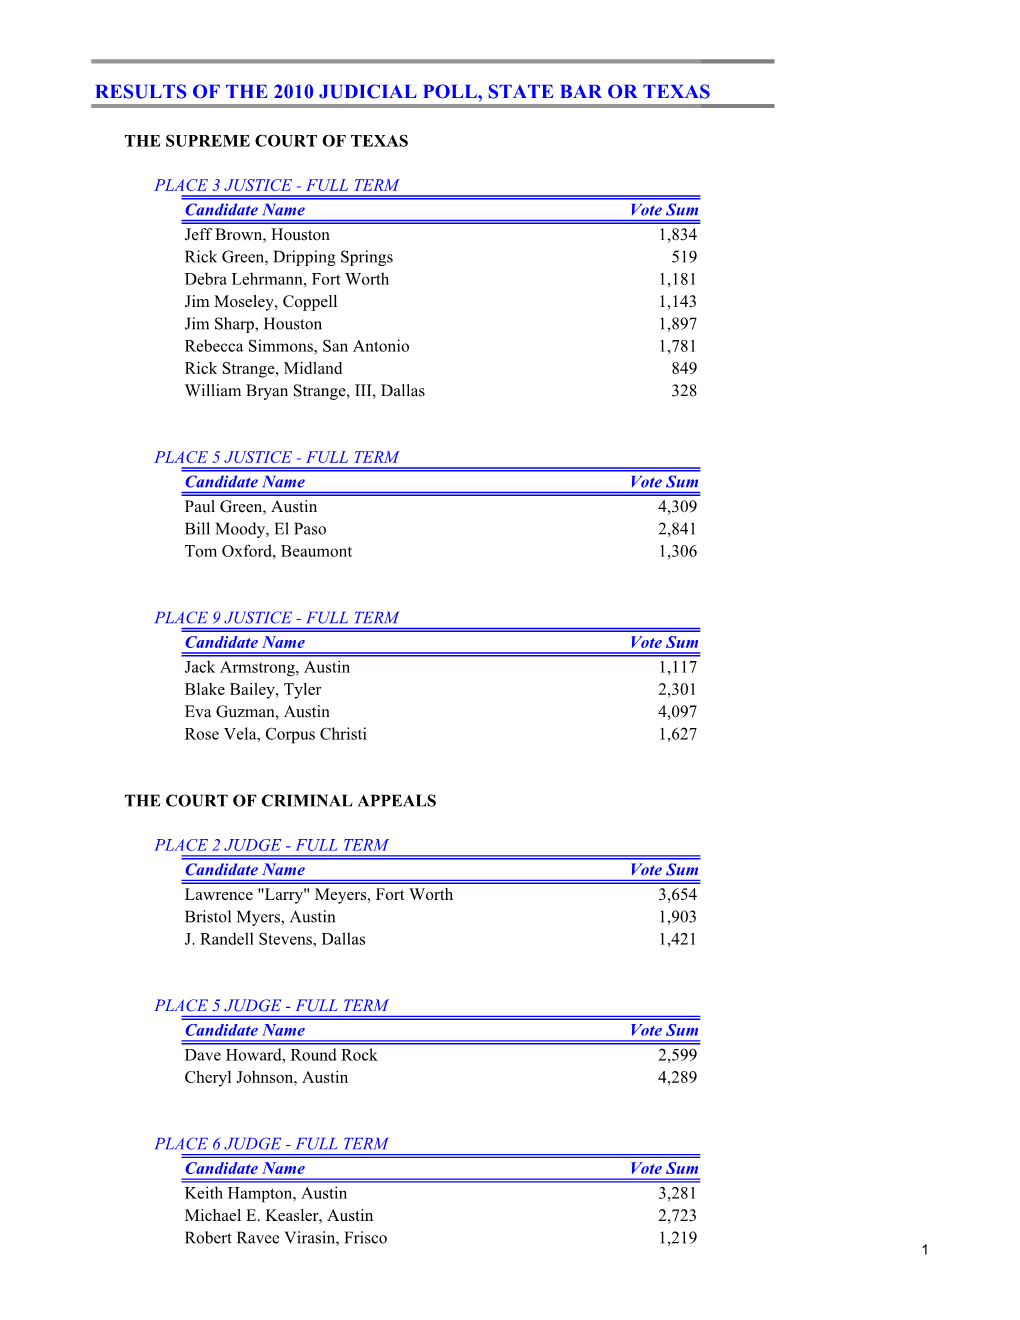 SBOT Judicial Results